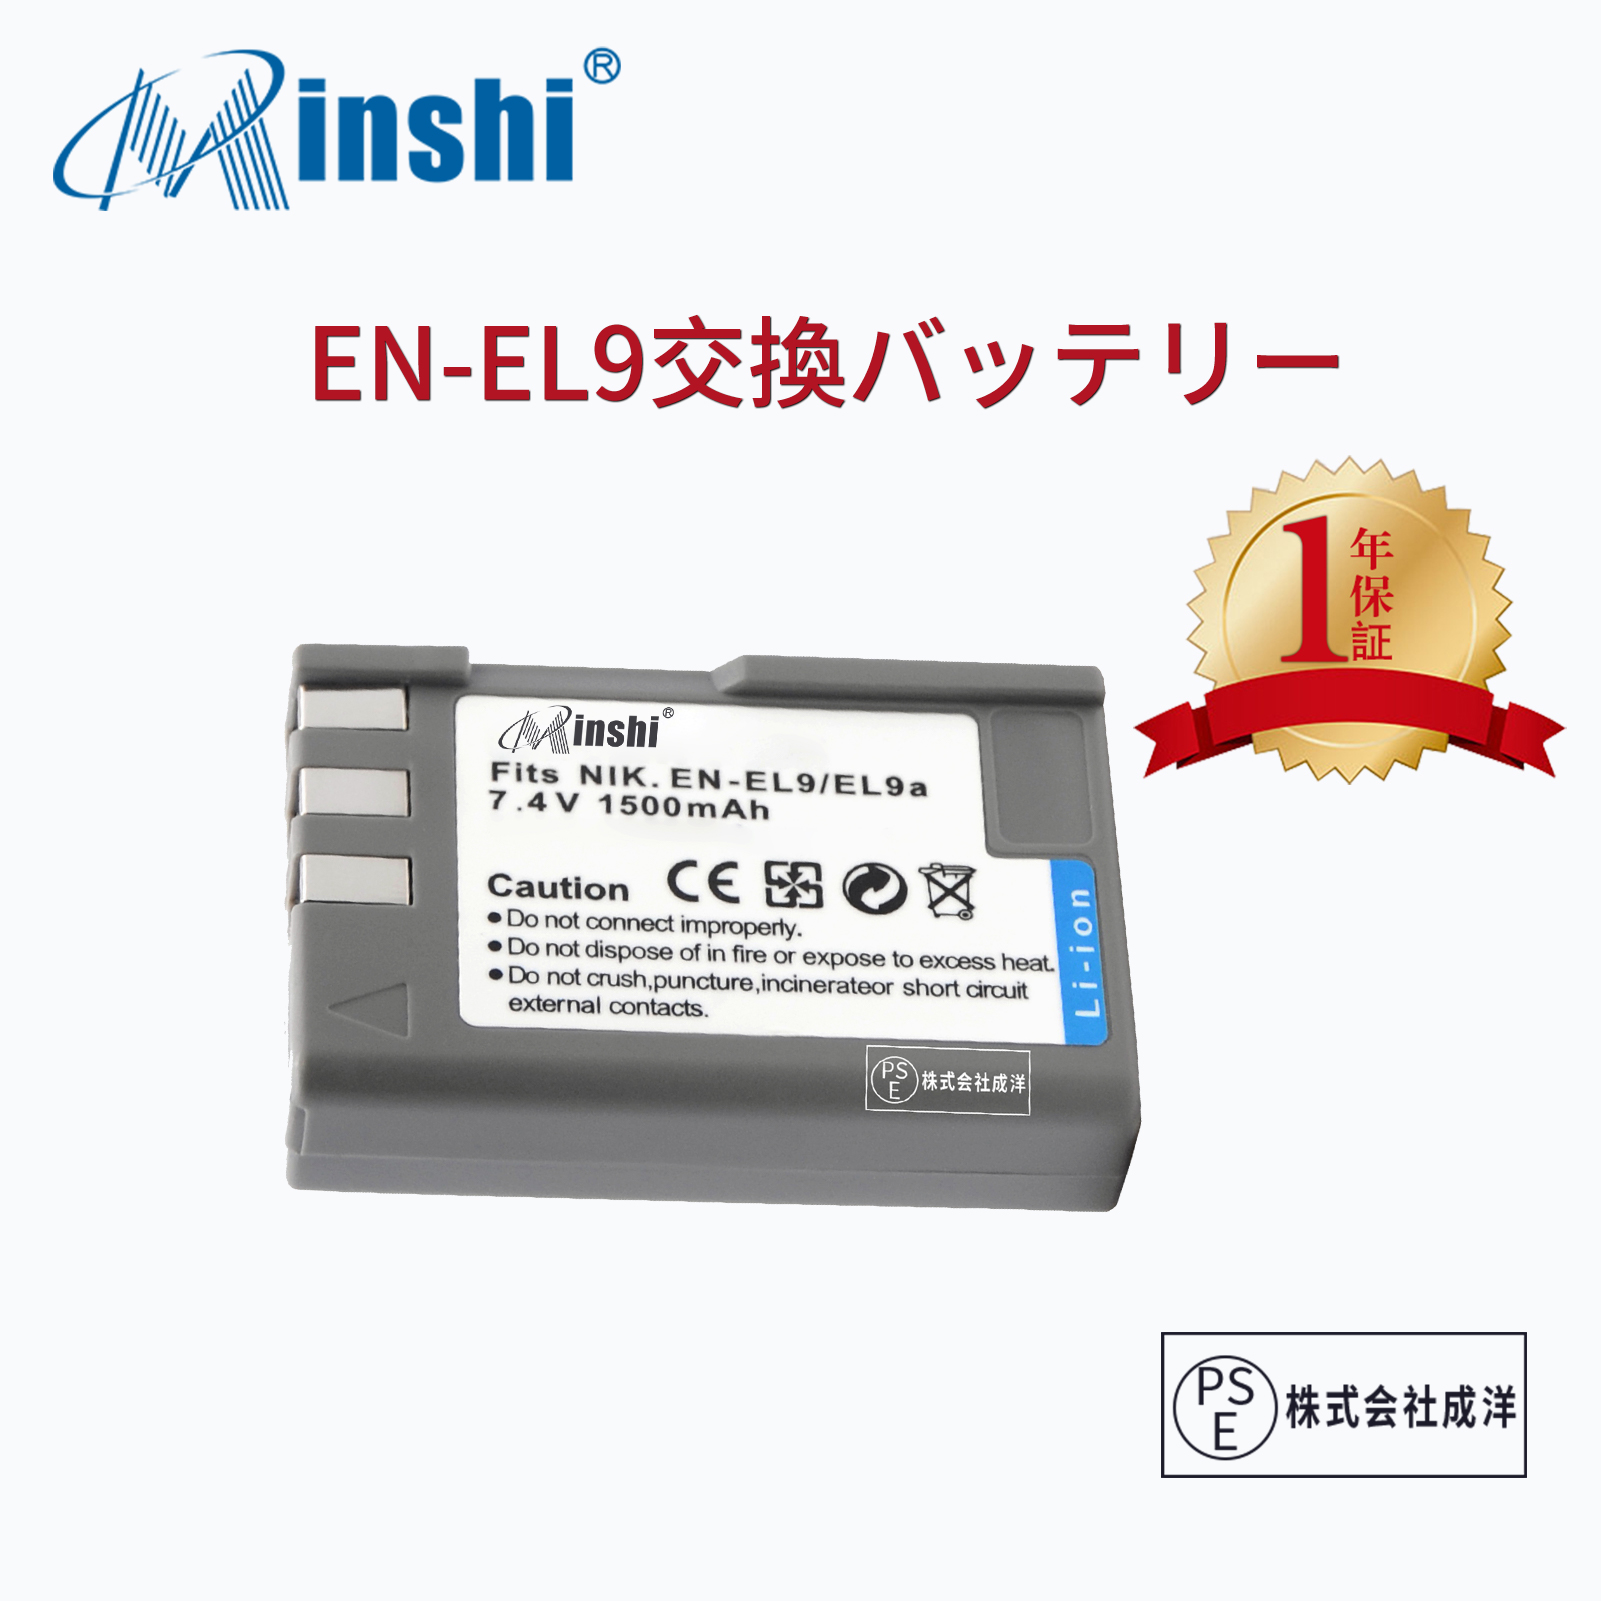 【1年保証】minshi NIKON EN-EL9a【1500mAh 7.4V】 PSE認定済 高品質EN-EL9 EN-EL9a EN-EL9e互換バッテリーPHB